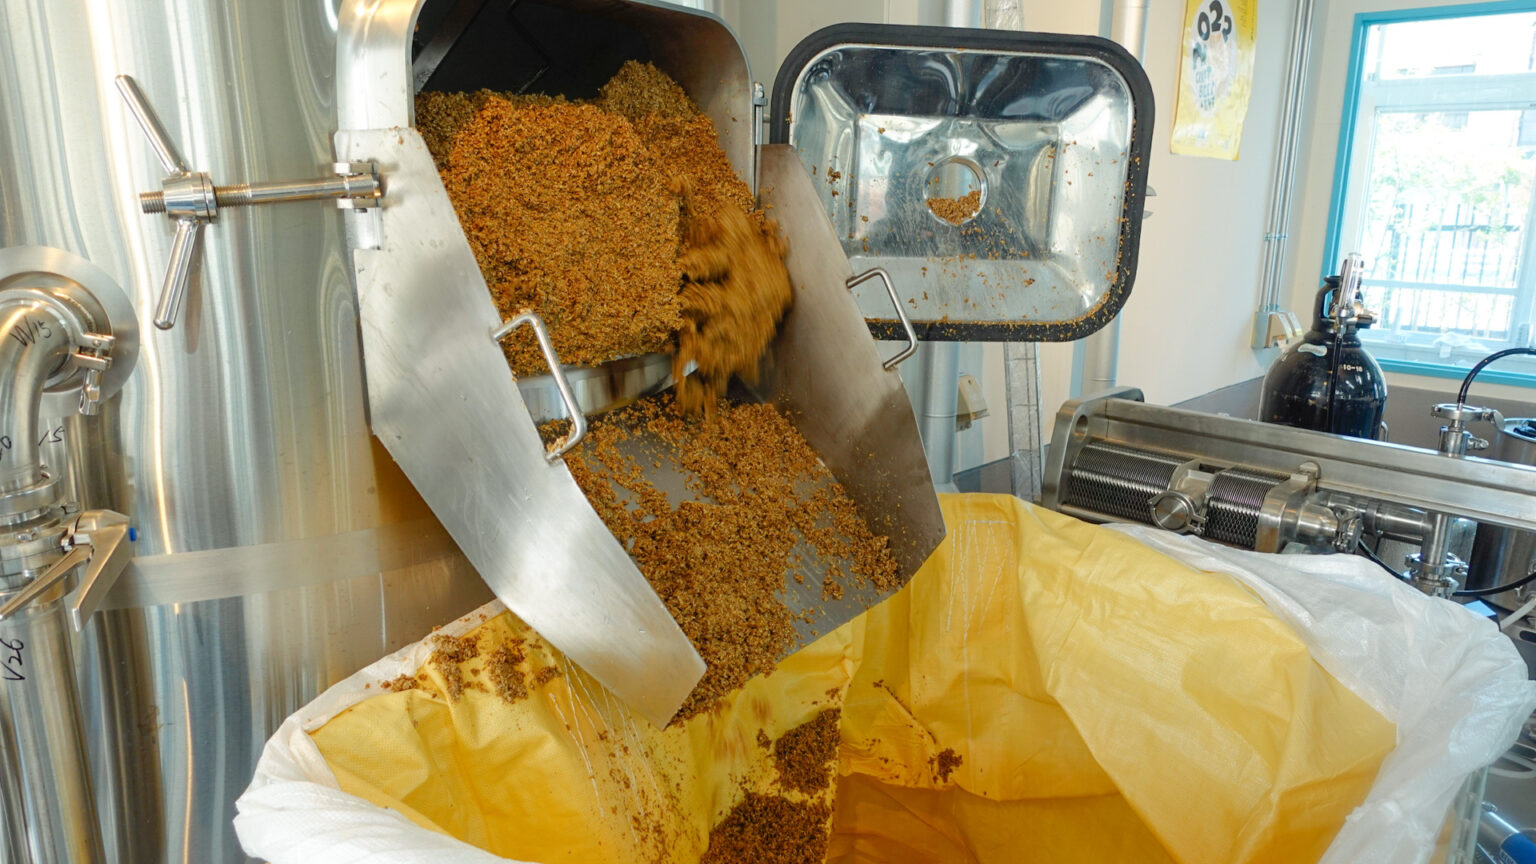 〈湊山醸造所〉は、1回あたりの仕込みで1,200Lのビールを作ることができる。醸造の際にできる麦芽かすは、堆肥として利用。